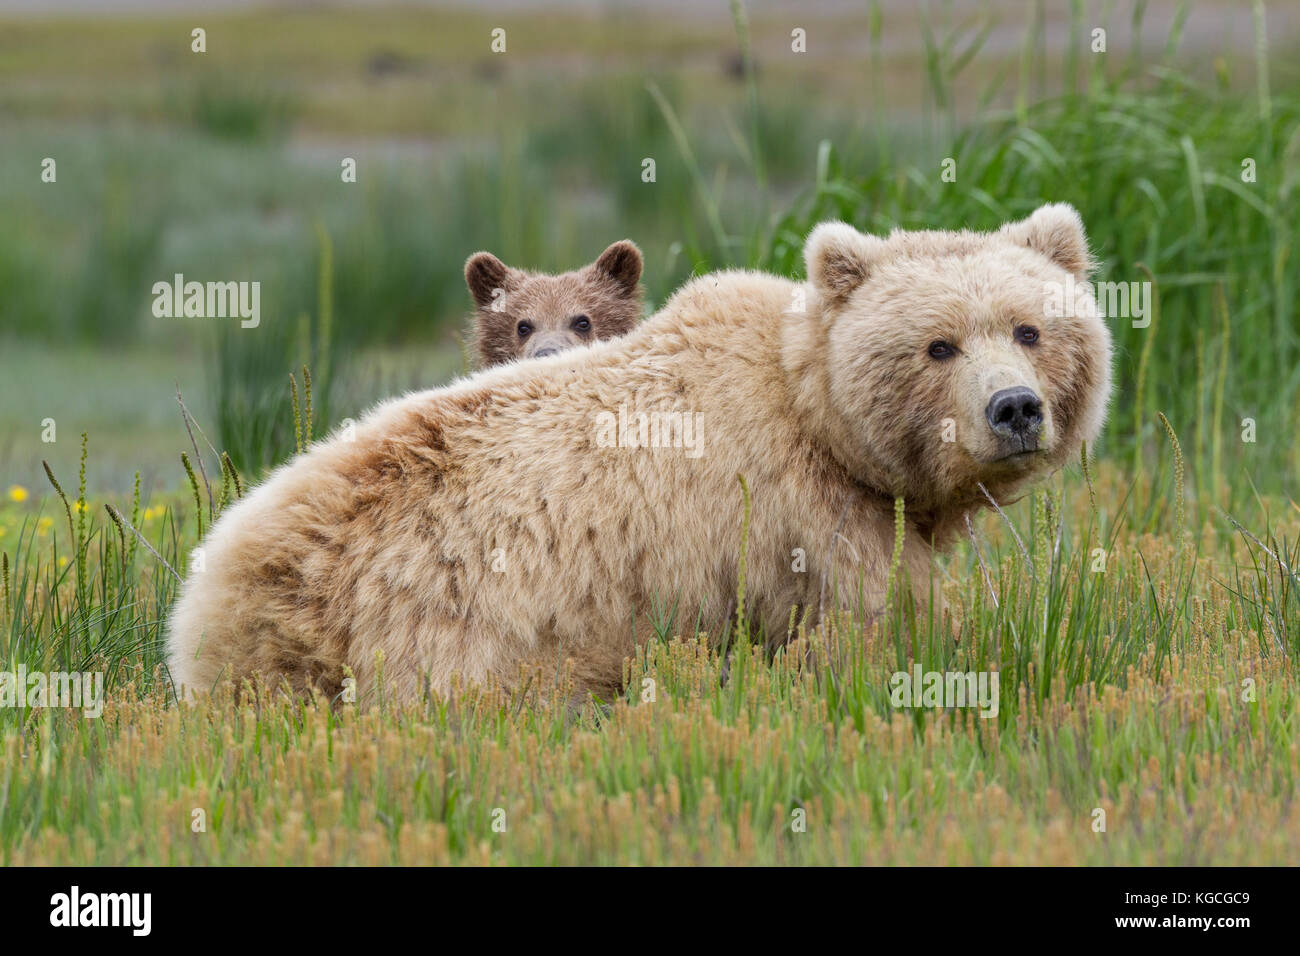 L'ours brun d'Alaska semer avec cub Banque D'Images